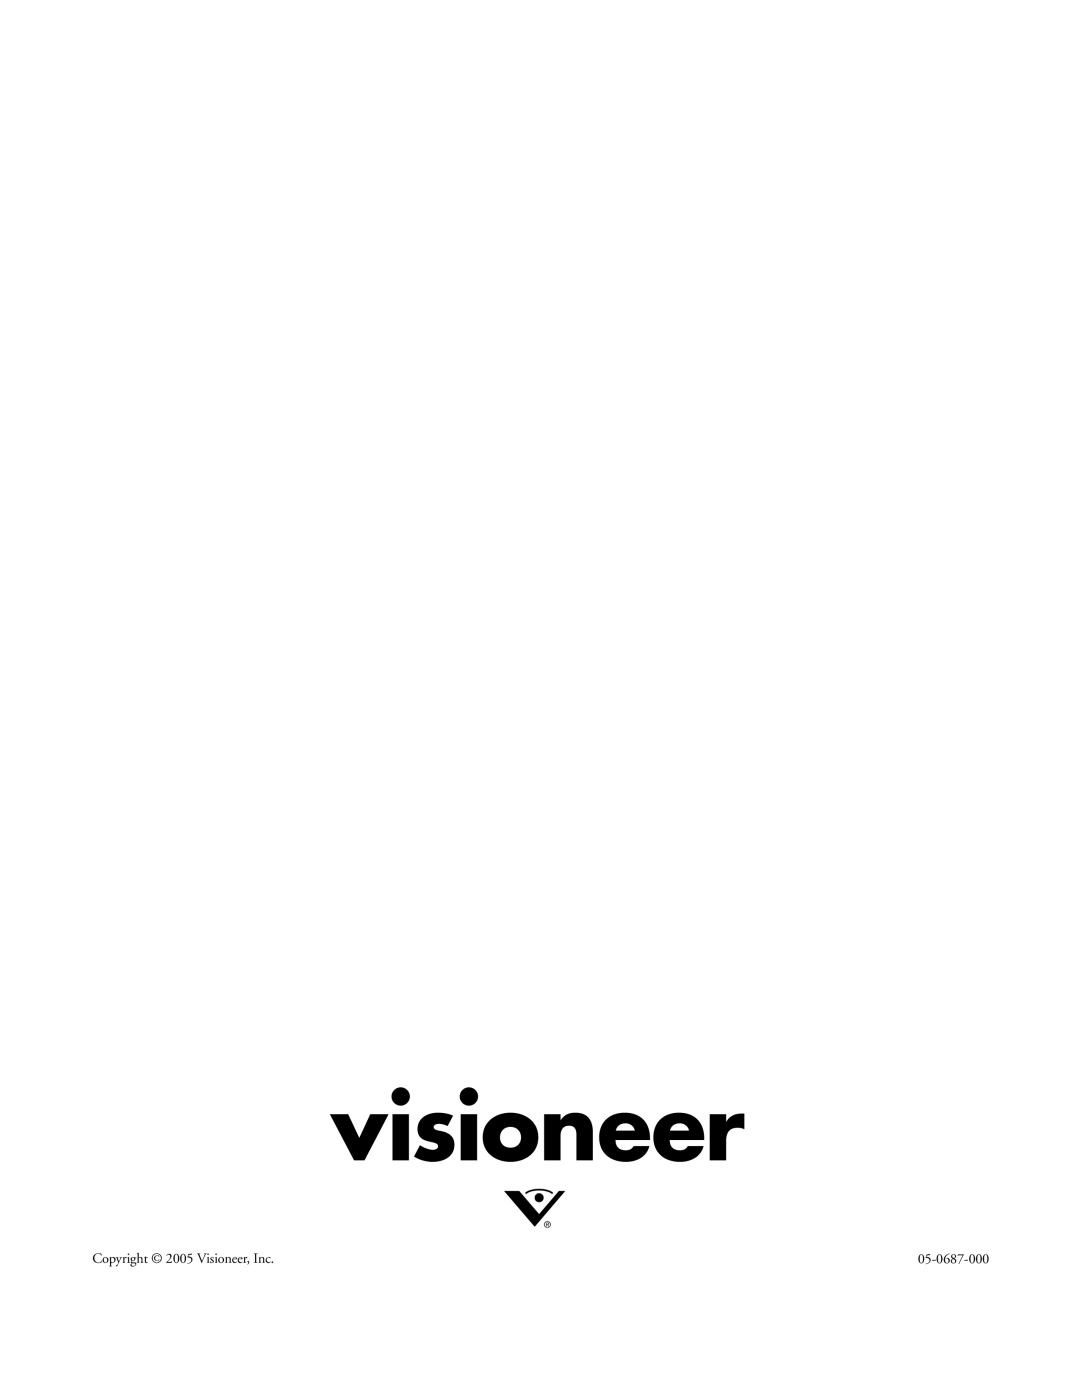 Visioneer XP 470 manual visioneer, Copyright 2005 Visioneer, Inc, 05-0687-000 